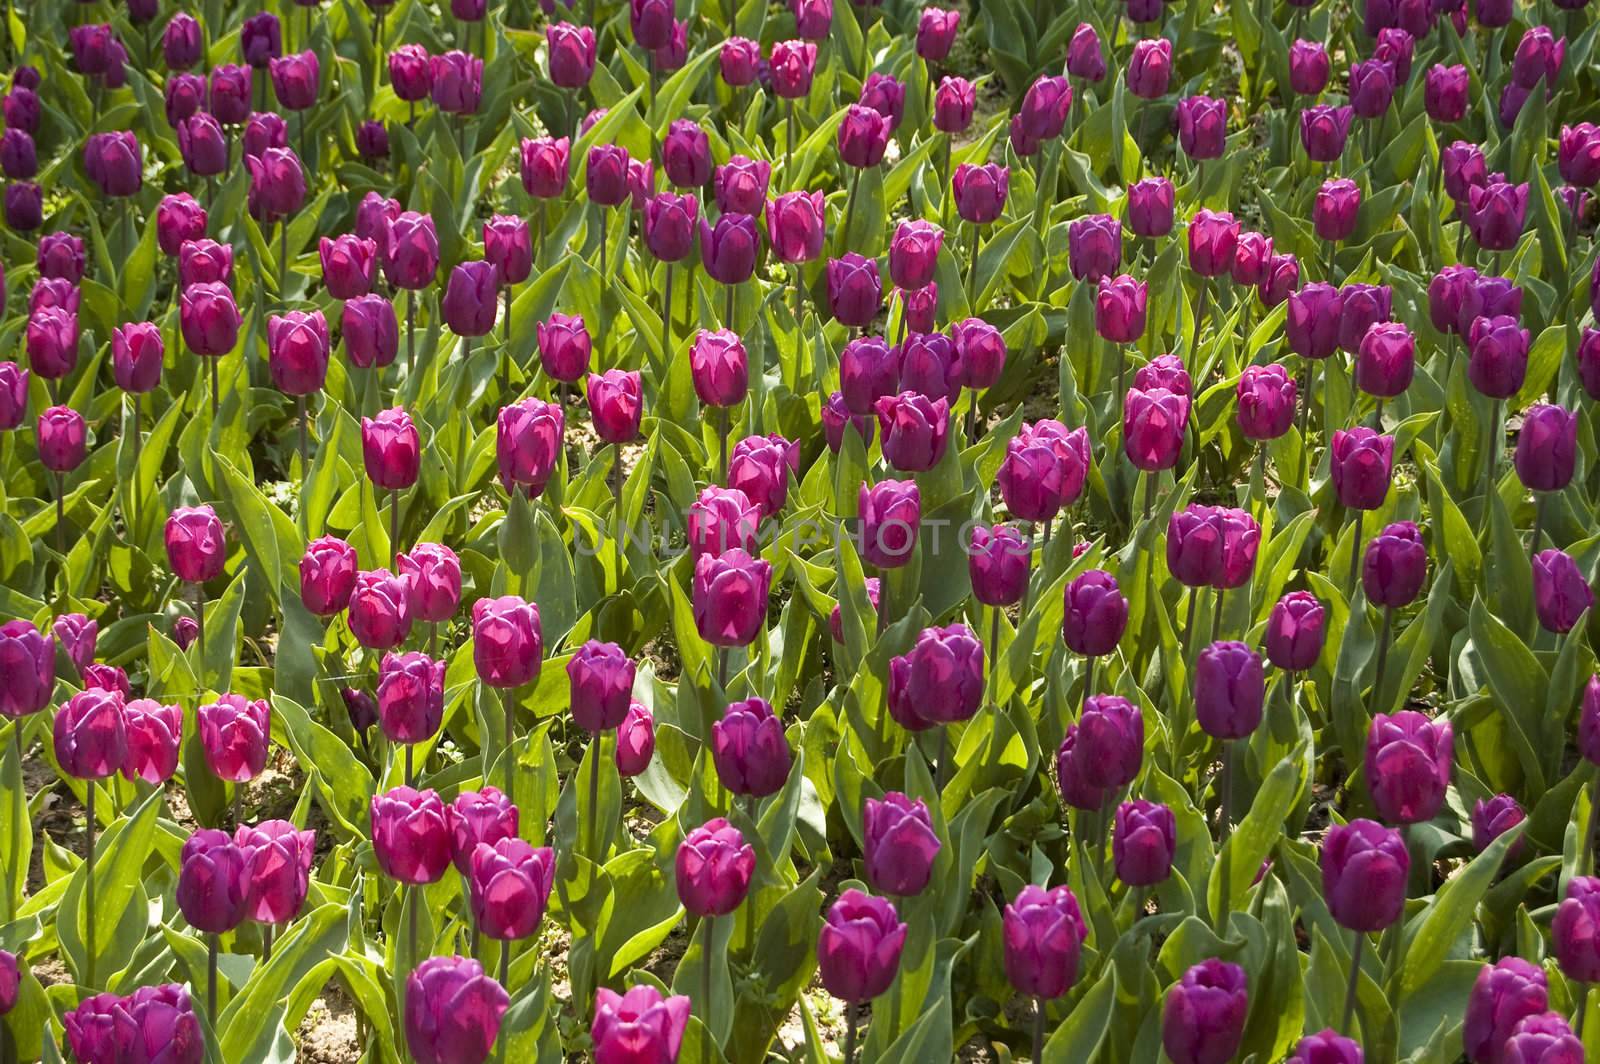 MAny tulips